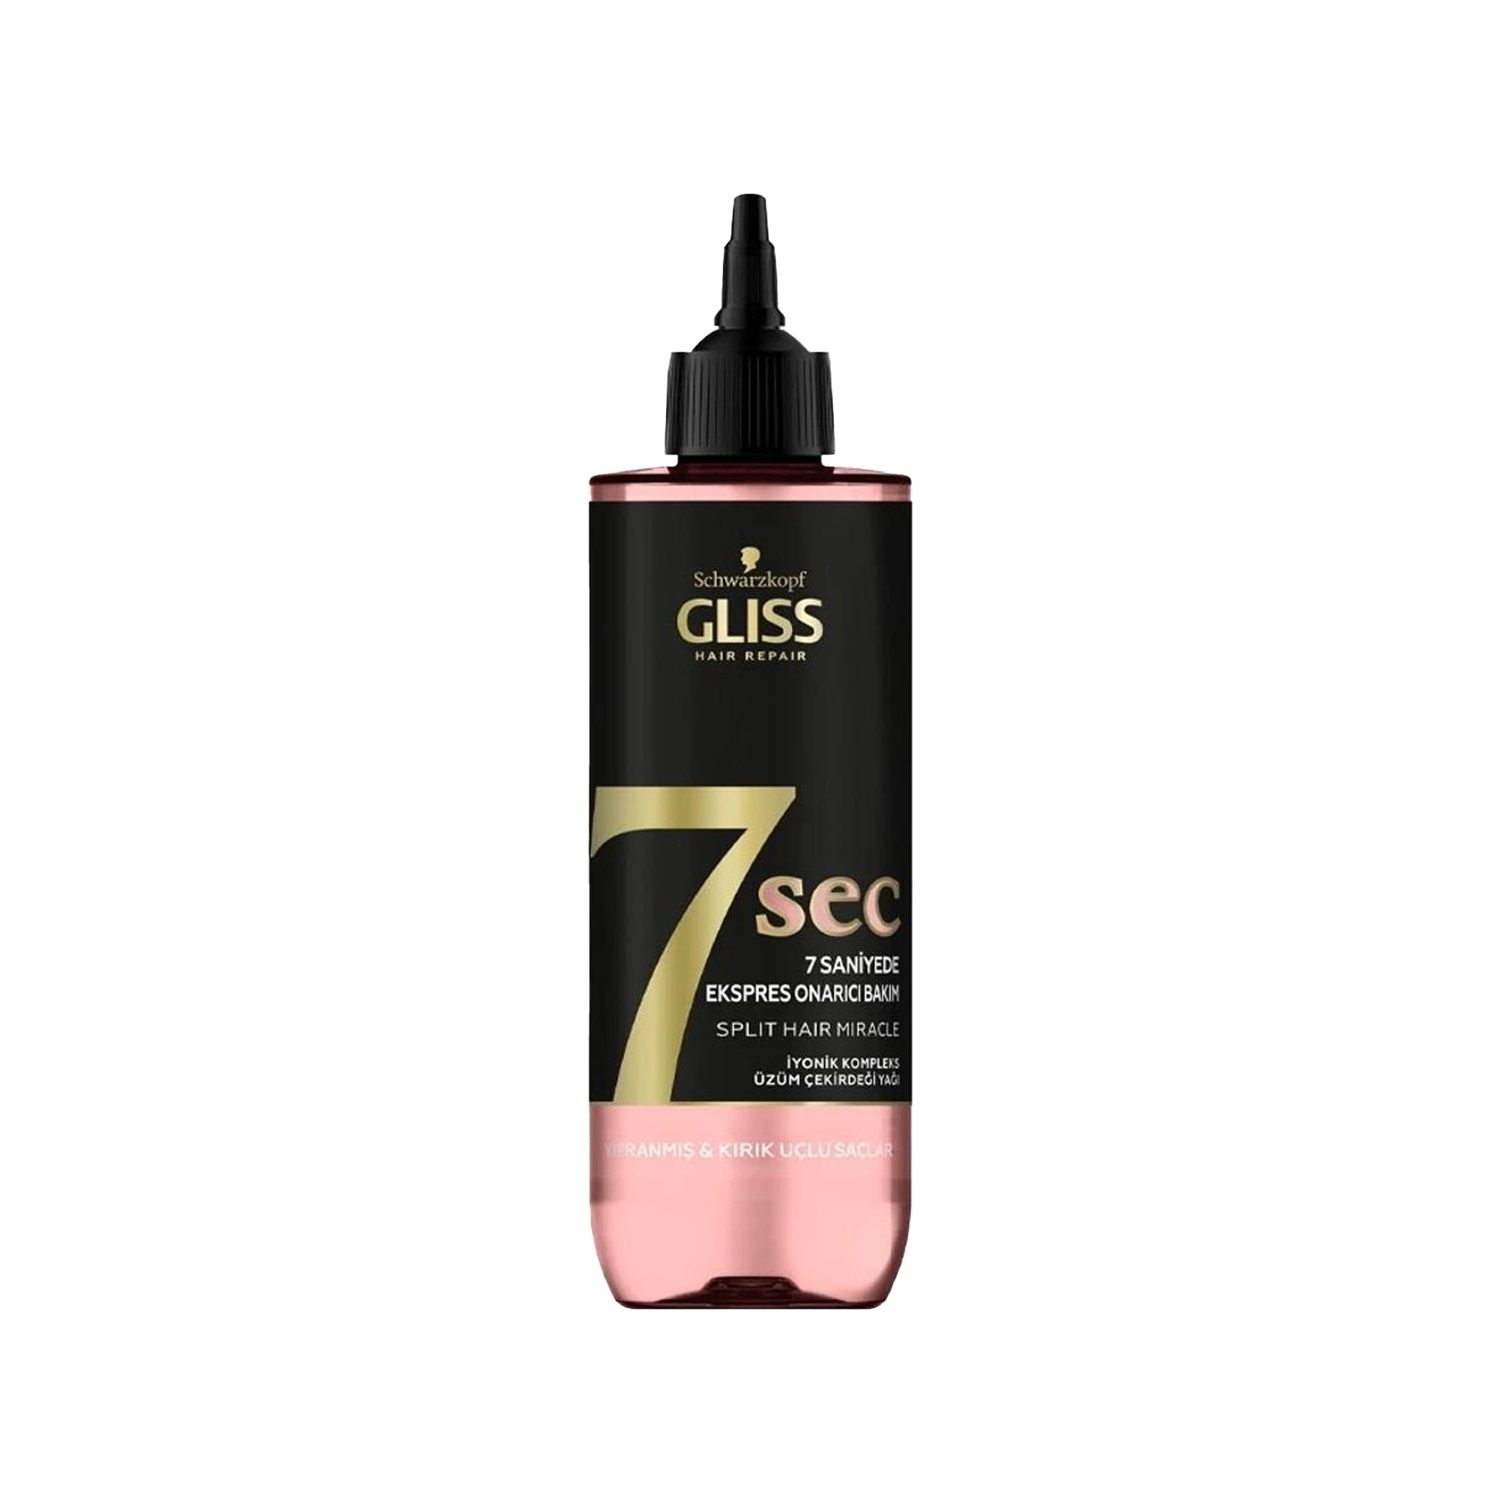 Gliss 7sec Split Hair Miracle 7 Saniyede Express Onarıcı Sıvı Saç Krem 200 ml